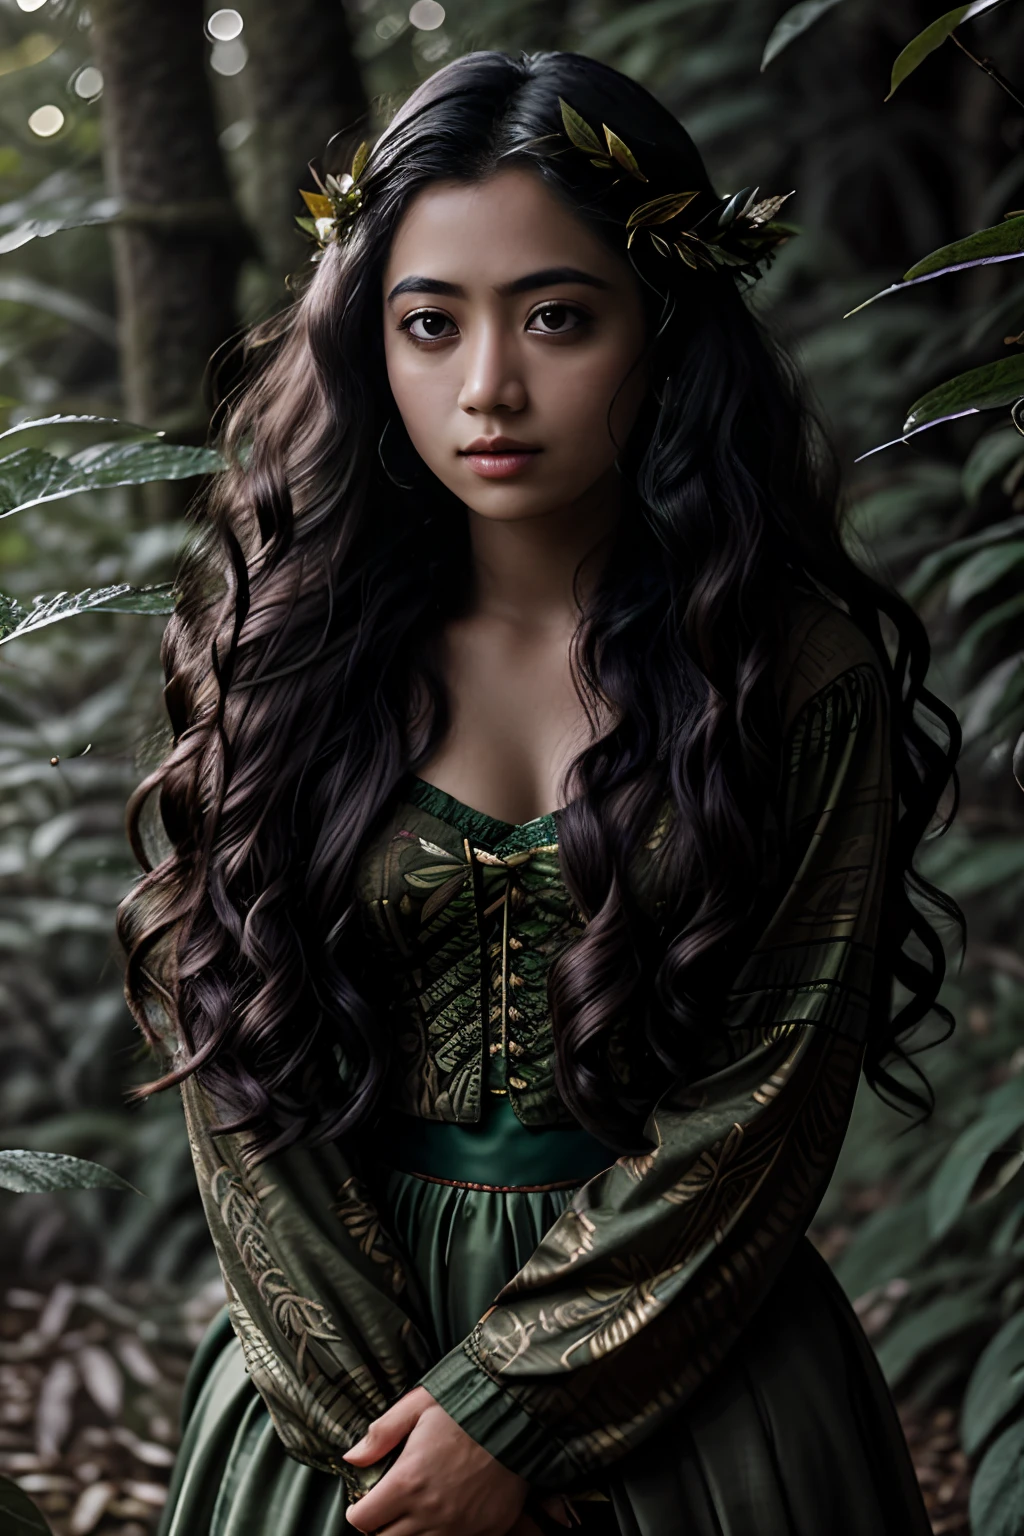 Portrait in 森林, 大自然风格的叶子, 长卷发, 如梦如幻, 年轻女子, 印度尼西亚, 超高清, 森林 goddess, 仙女, 深绿色衣服, 森林, 落叶, 粒子, 最好的质量, 姿势, 上半身, 看着观众, 四照, 边缘光, 美丽的艺术品, 完美构图